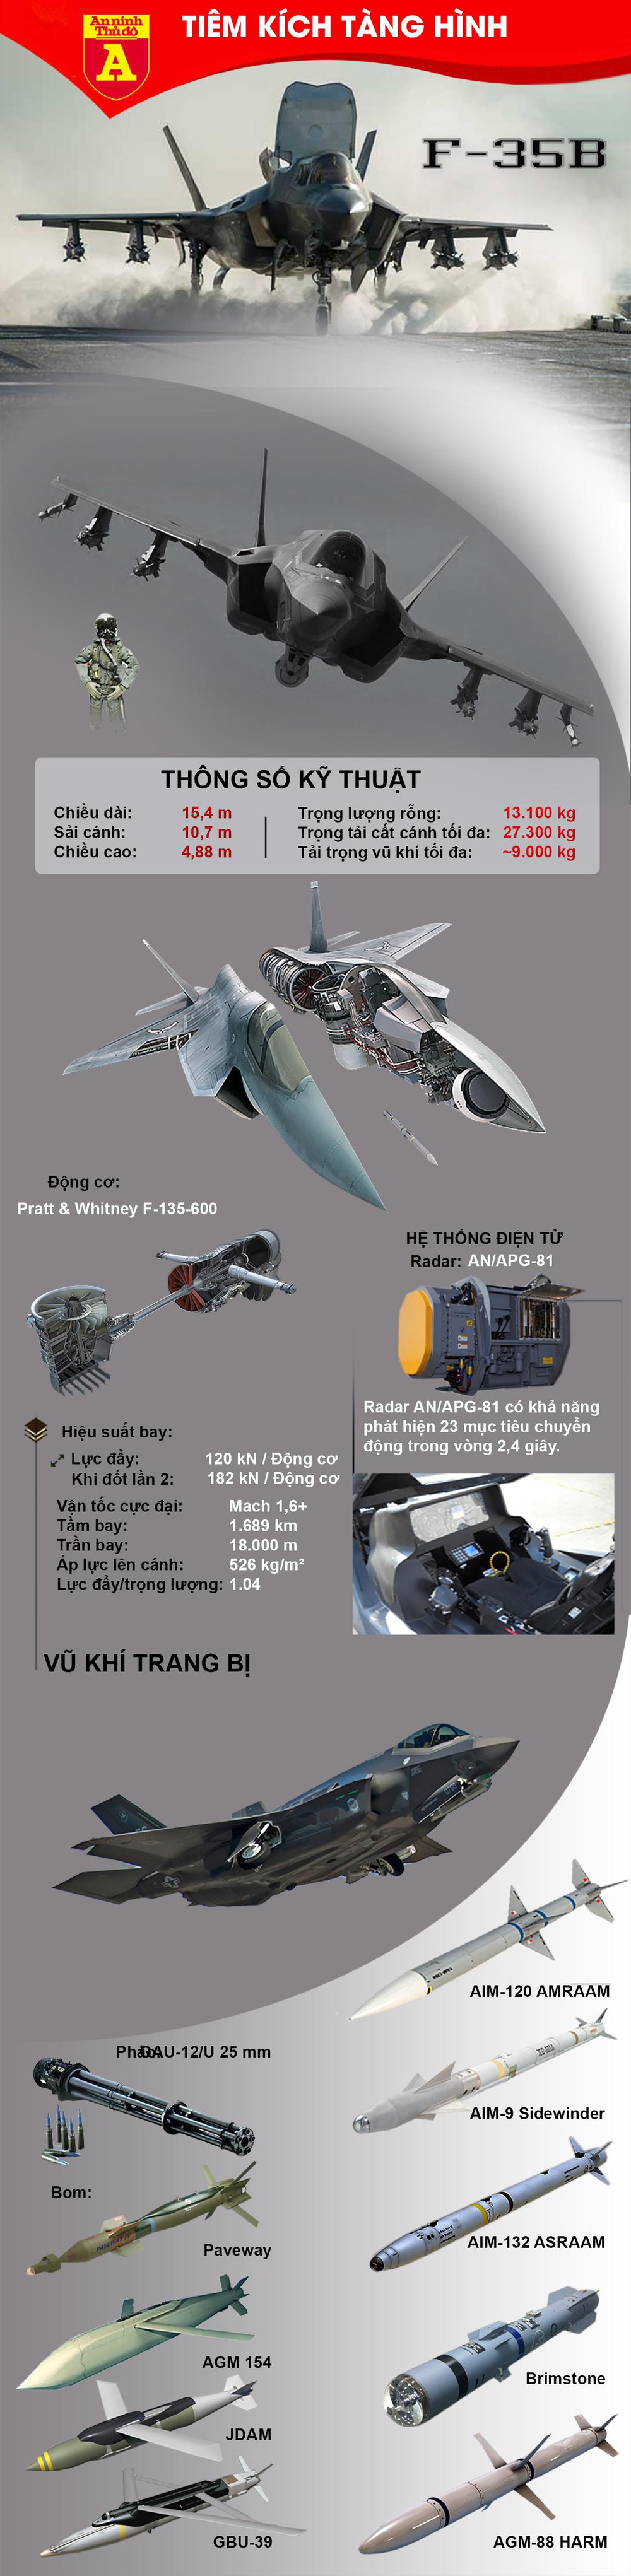 Cận cảnh tiêm kích tàng hình F-35B  - Ảnh 1